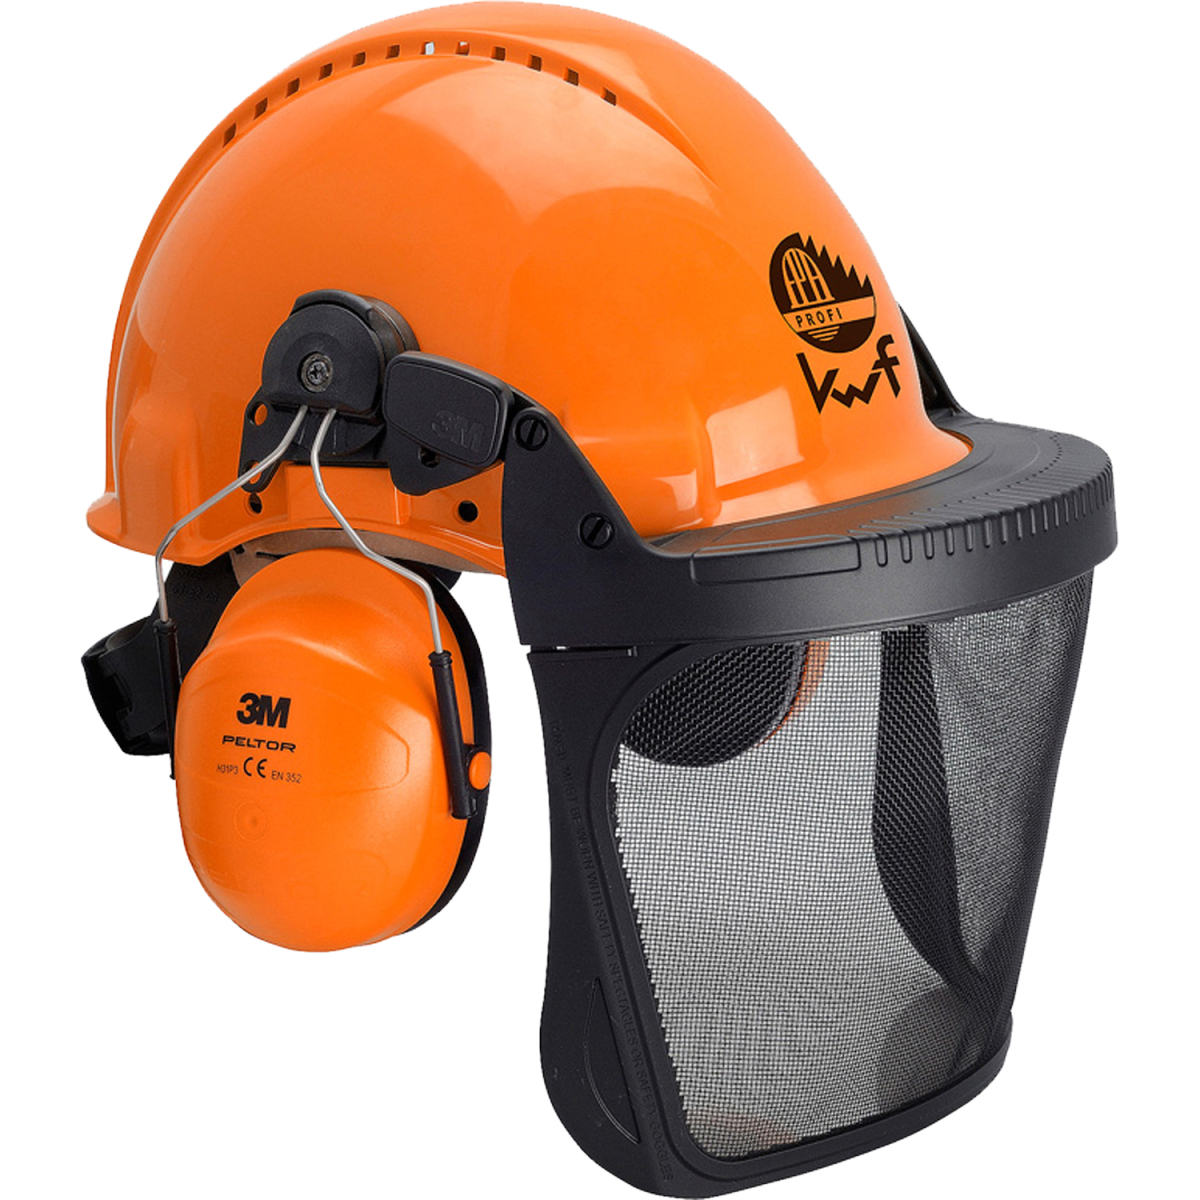 oranger forstschutz schutzhelm  mit kapselgehörschutz und visier